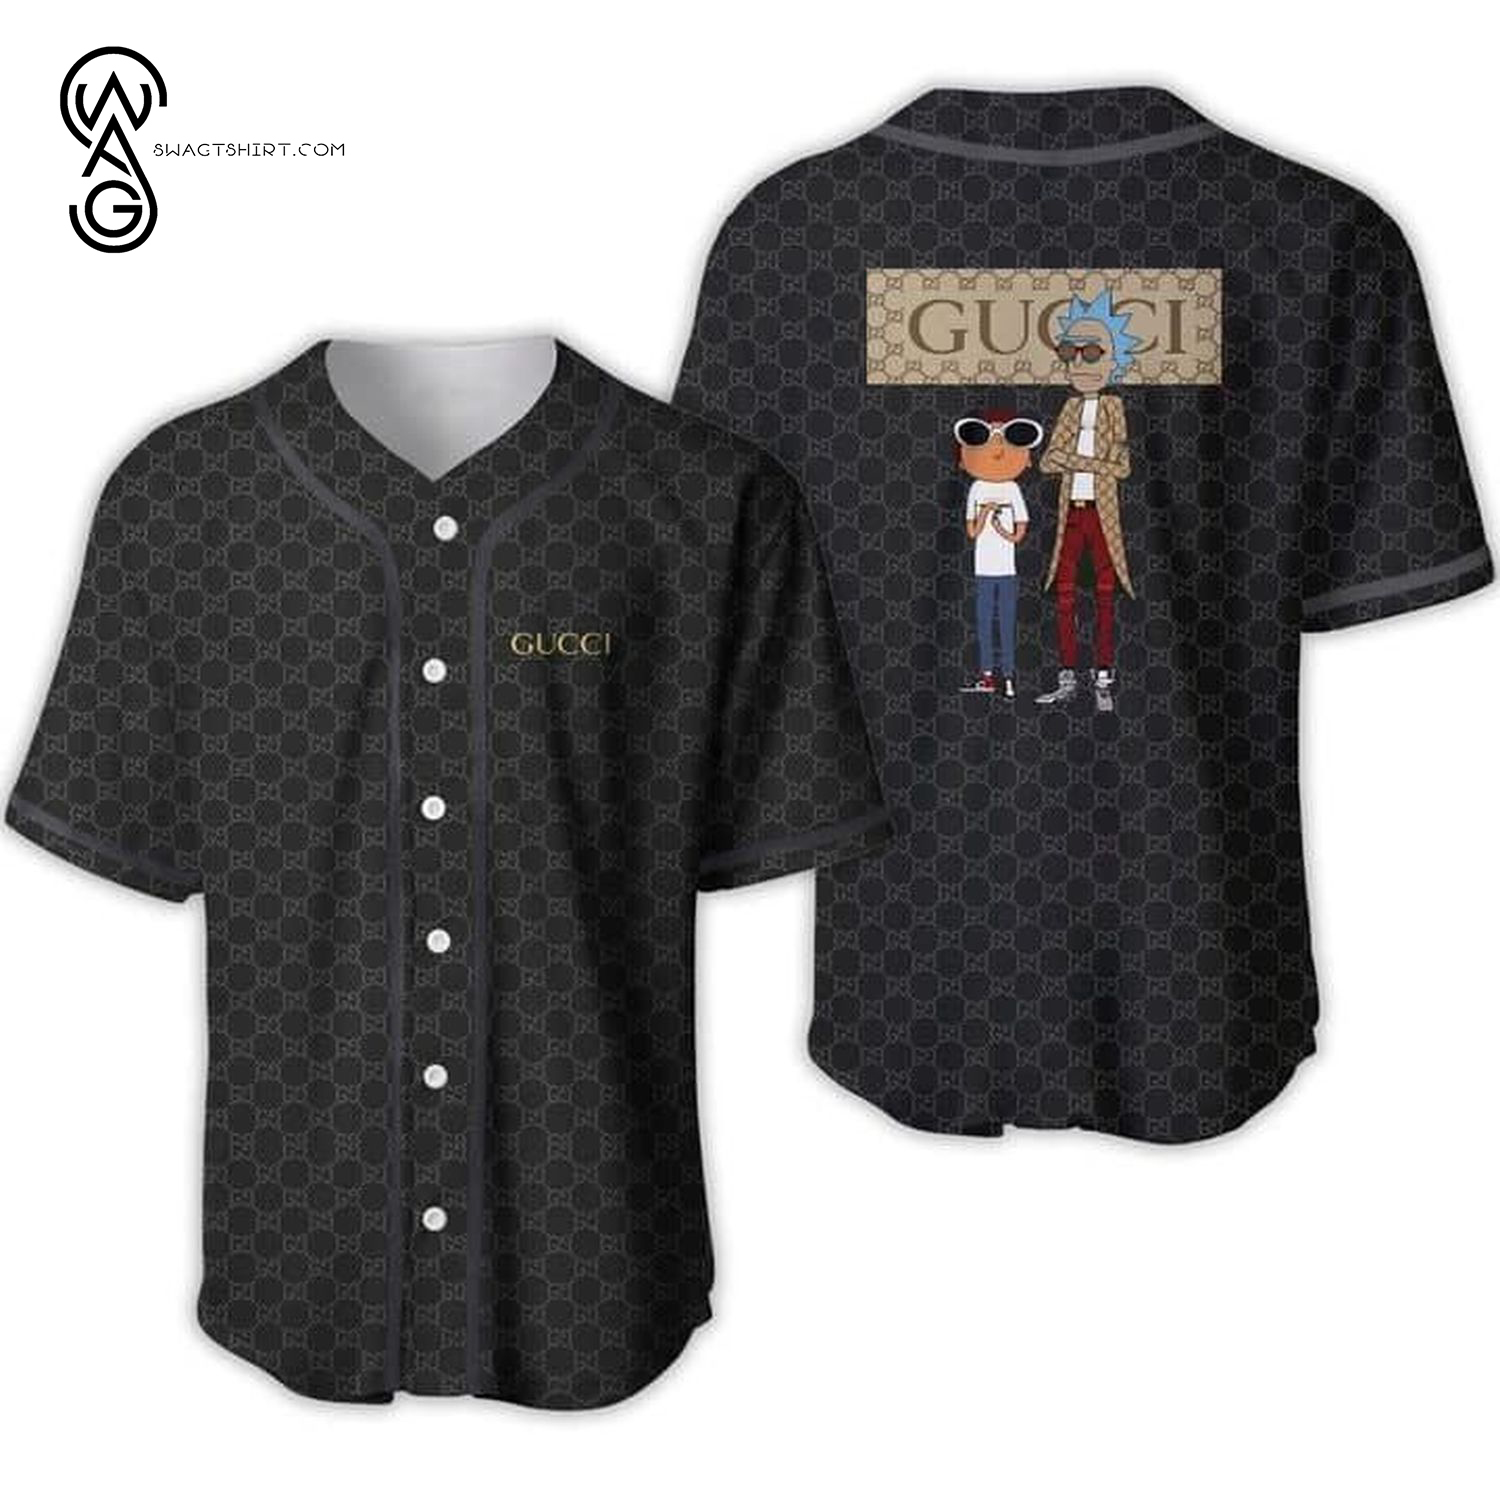 Gucci Rick and Morty Full Printed Baseball Jersey